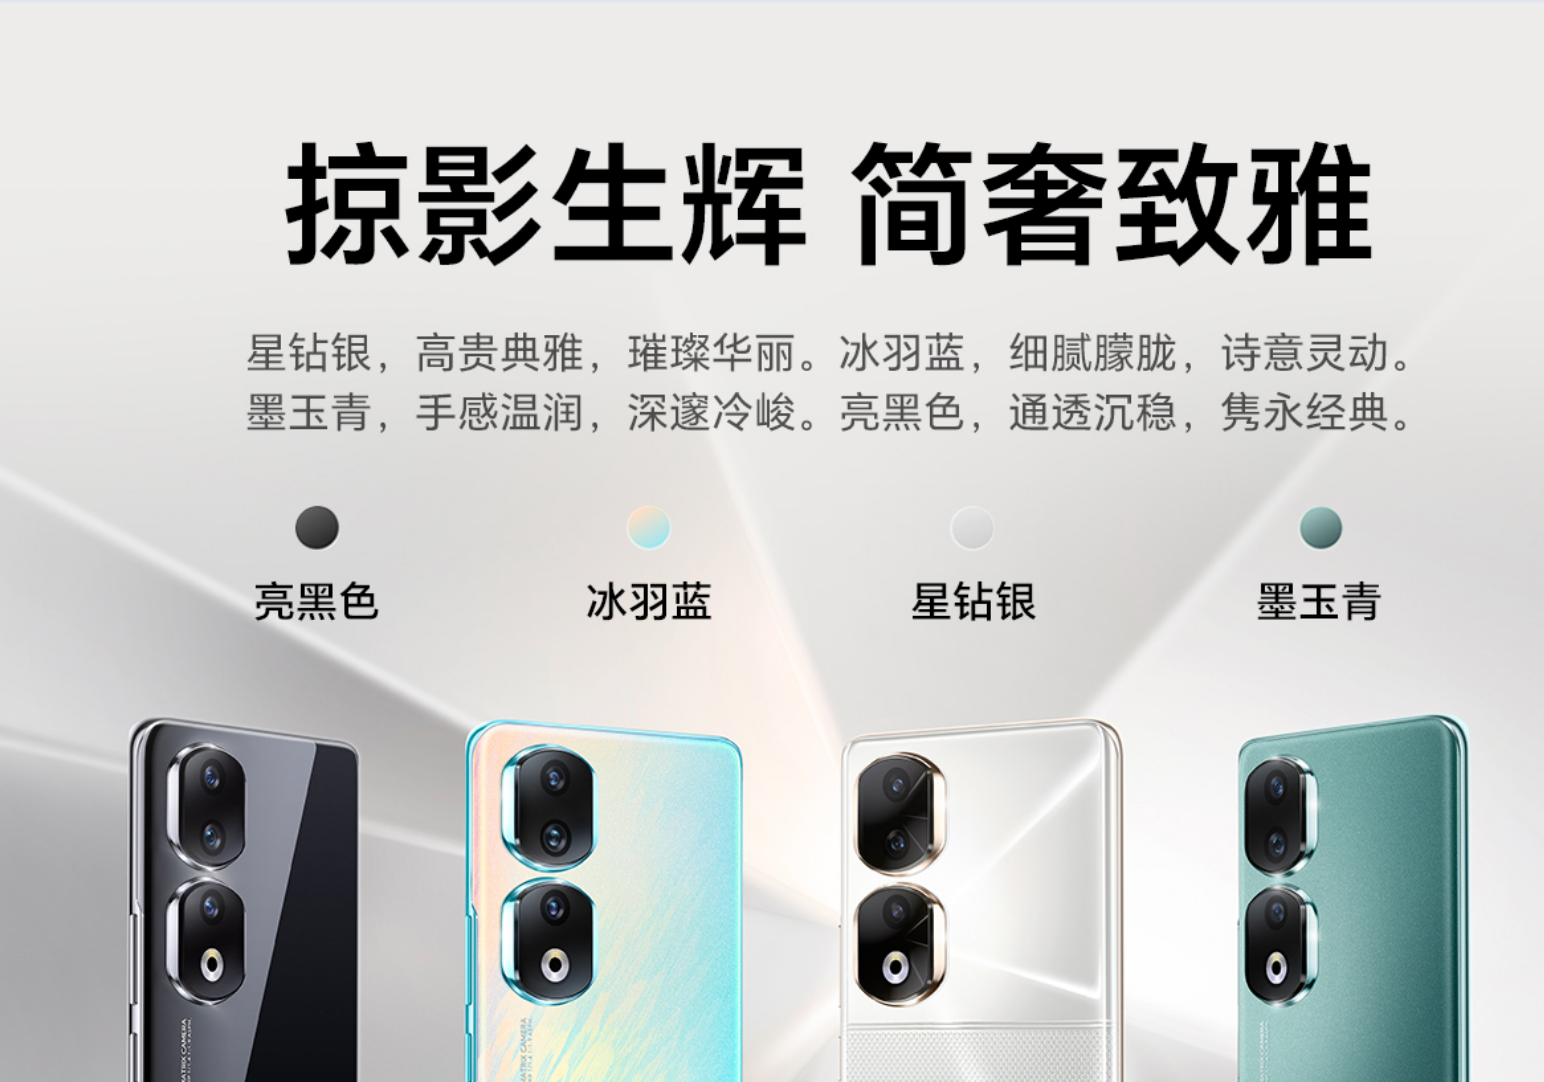 荣耀90系列发布2499元起(荣耀90系列是荣耀品牌最新推出的旗舰手机)